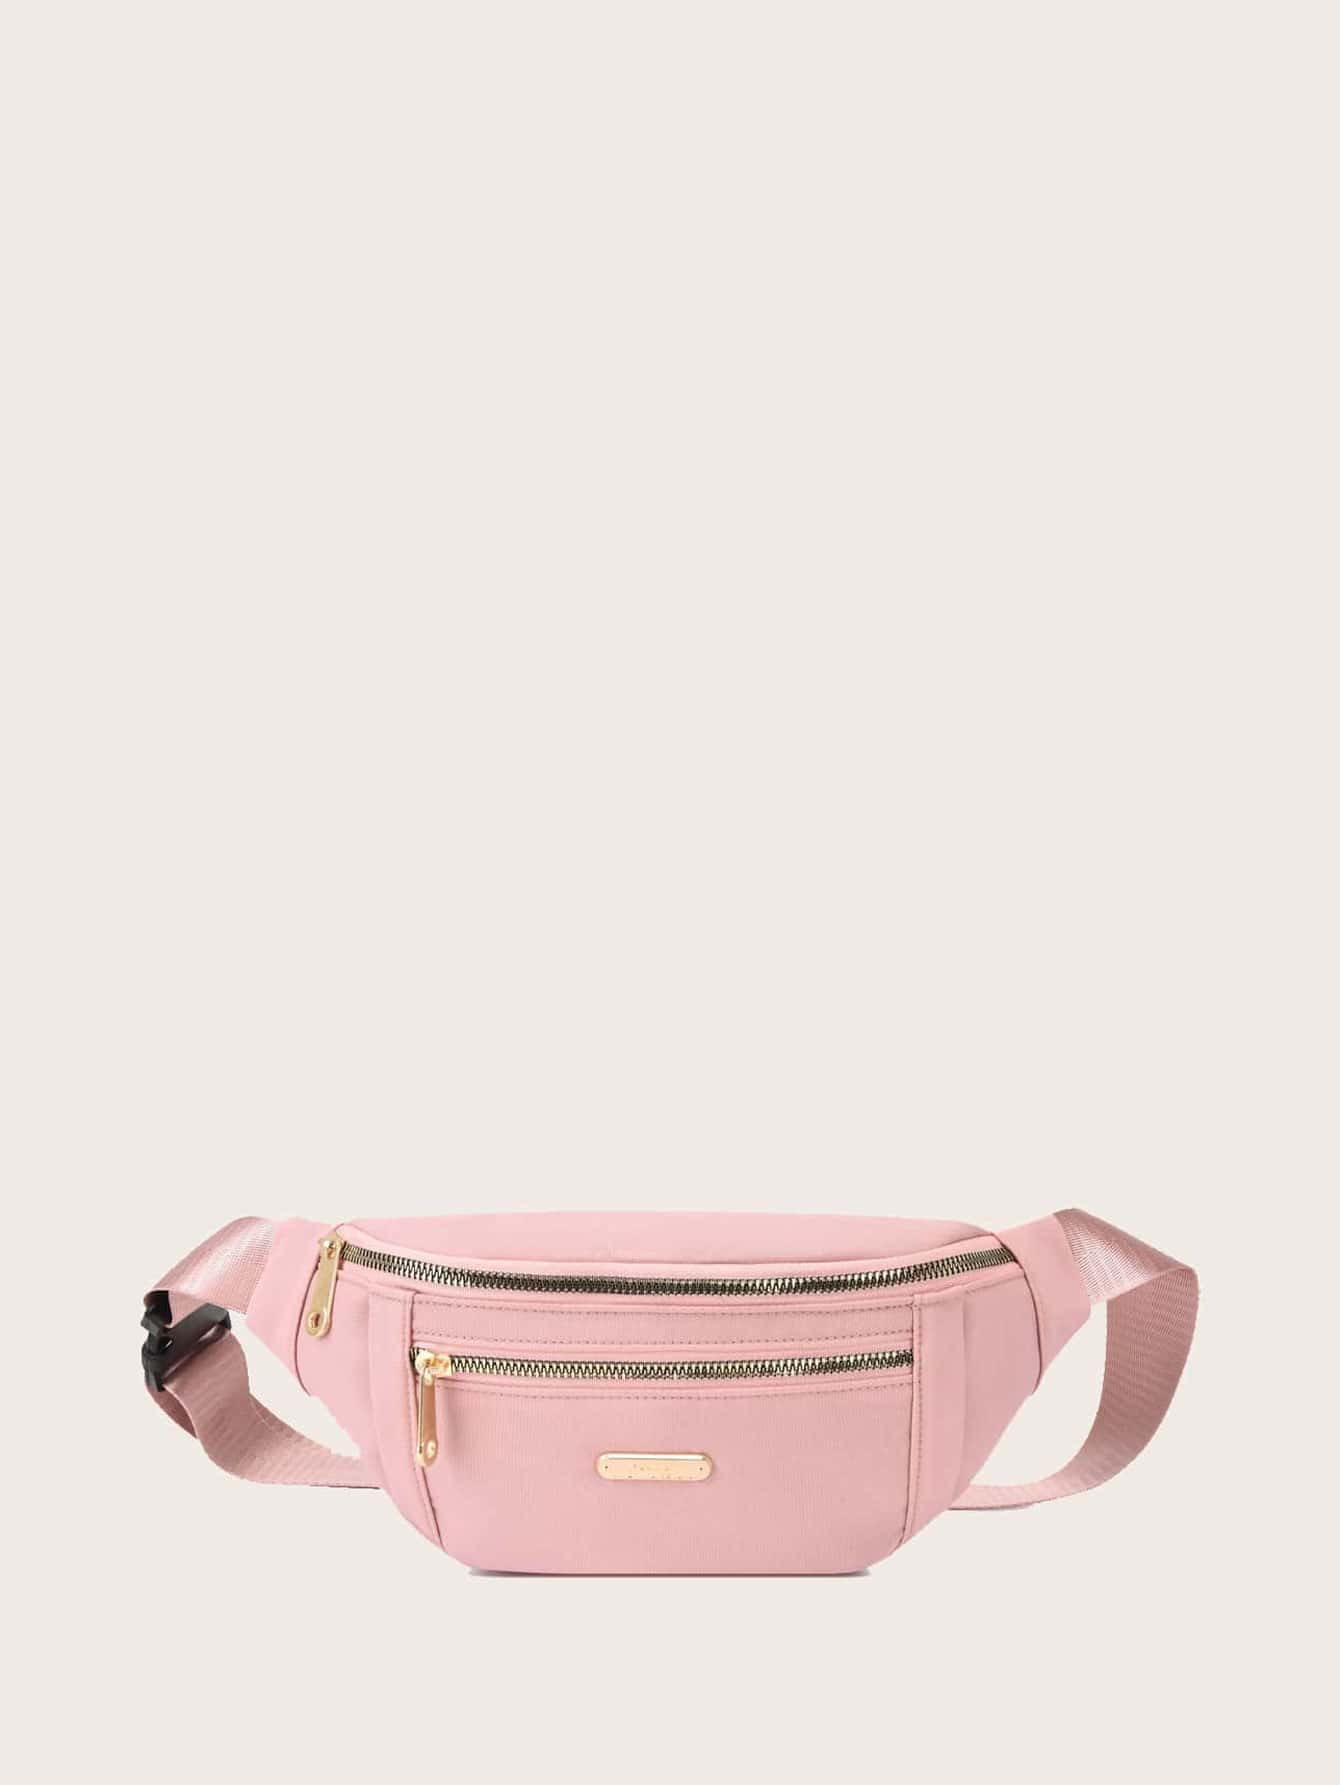 Поясная сумка с металлическим декором и пряжкой, розовый